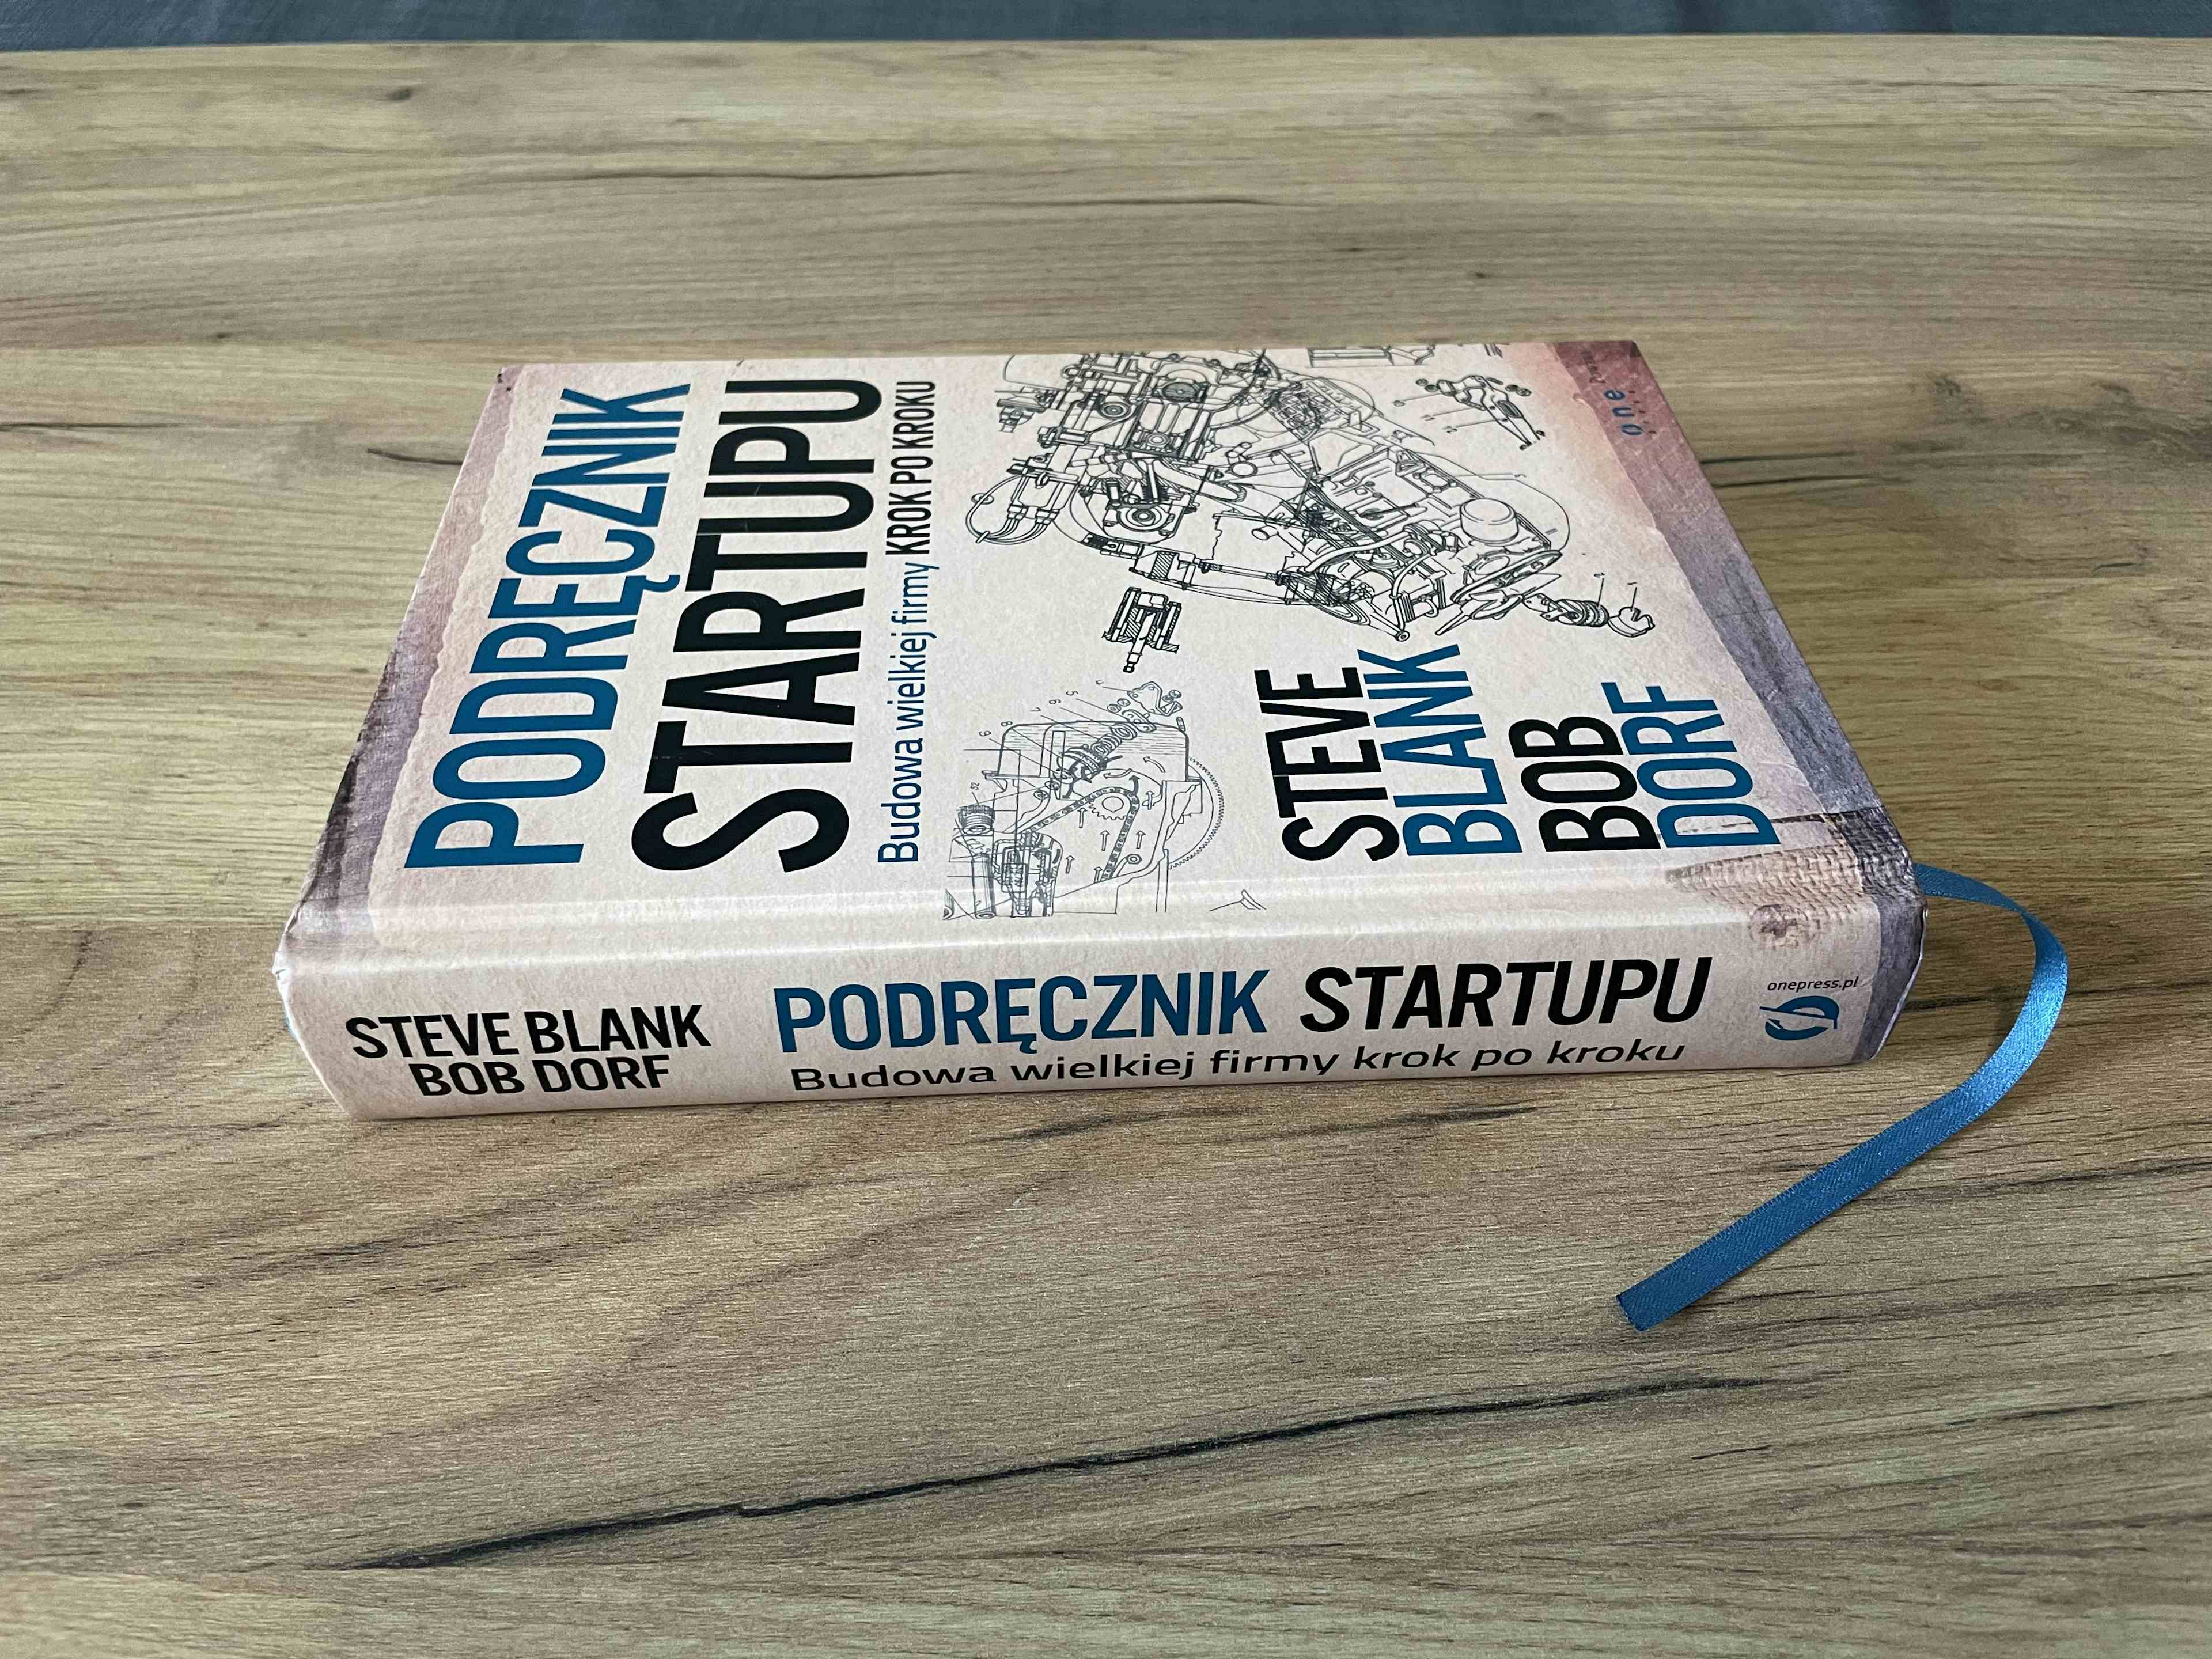 Primary picture of Książka "Podręcznik Startupu. Budowa wielkiej formy krok po kroku". Autorzy: Steve Blank, Bob Dorf